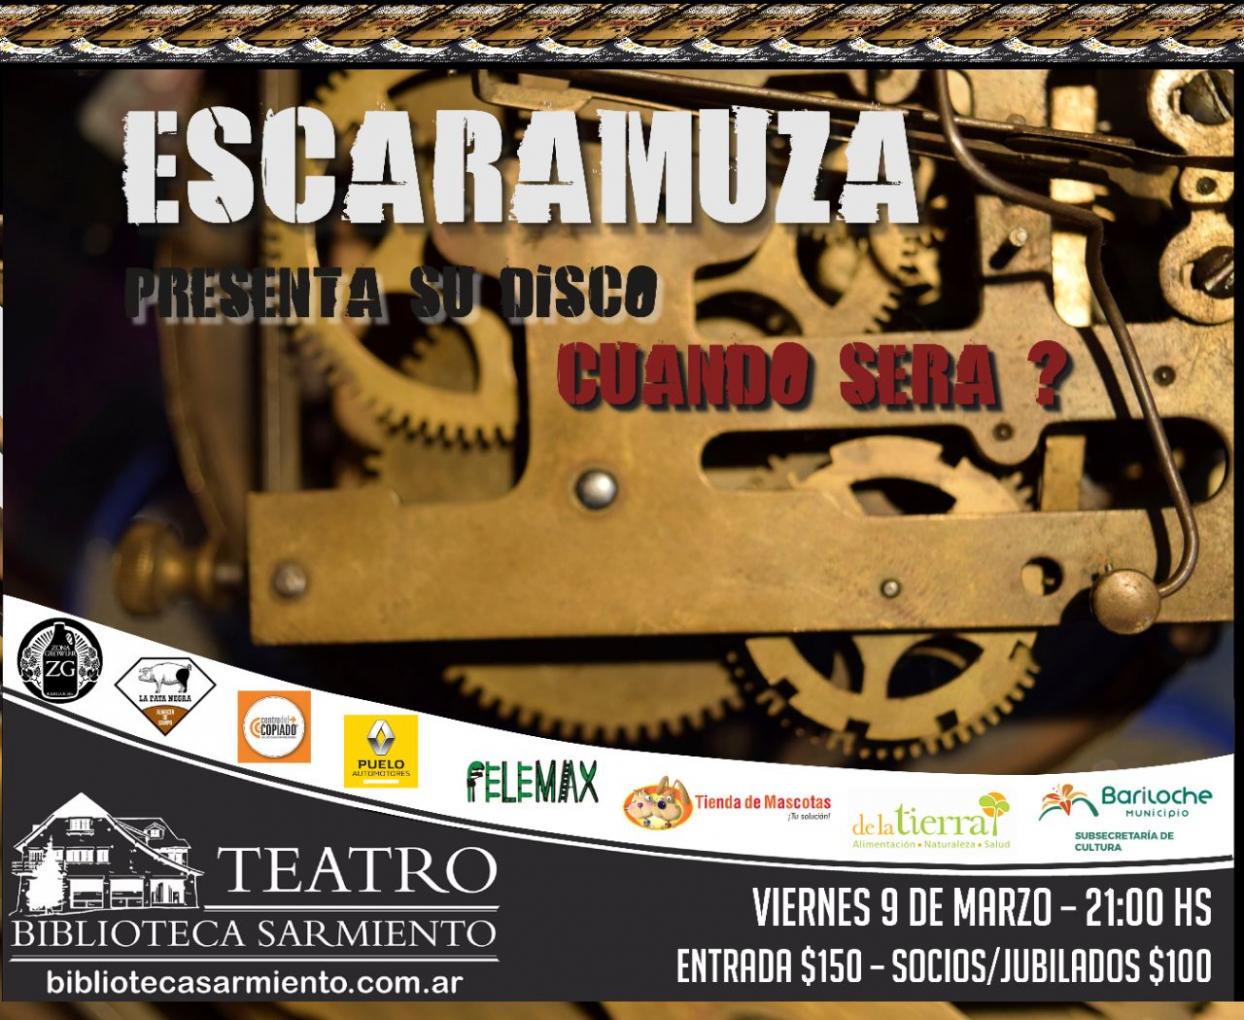 Este viernes 9 de Marzo la banda local "ESCARAMUZA" 